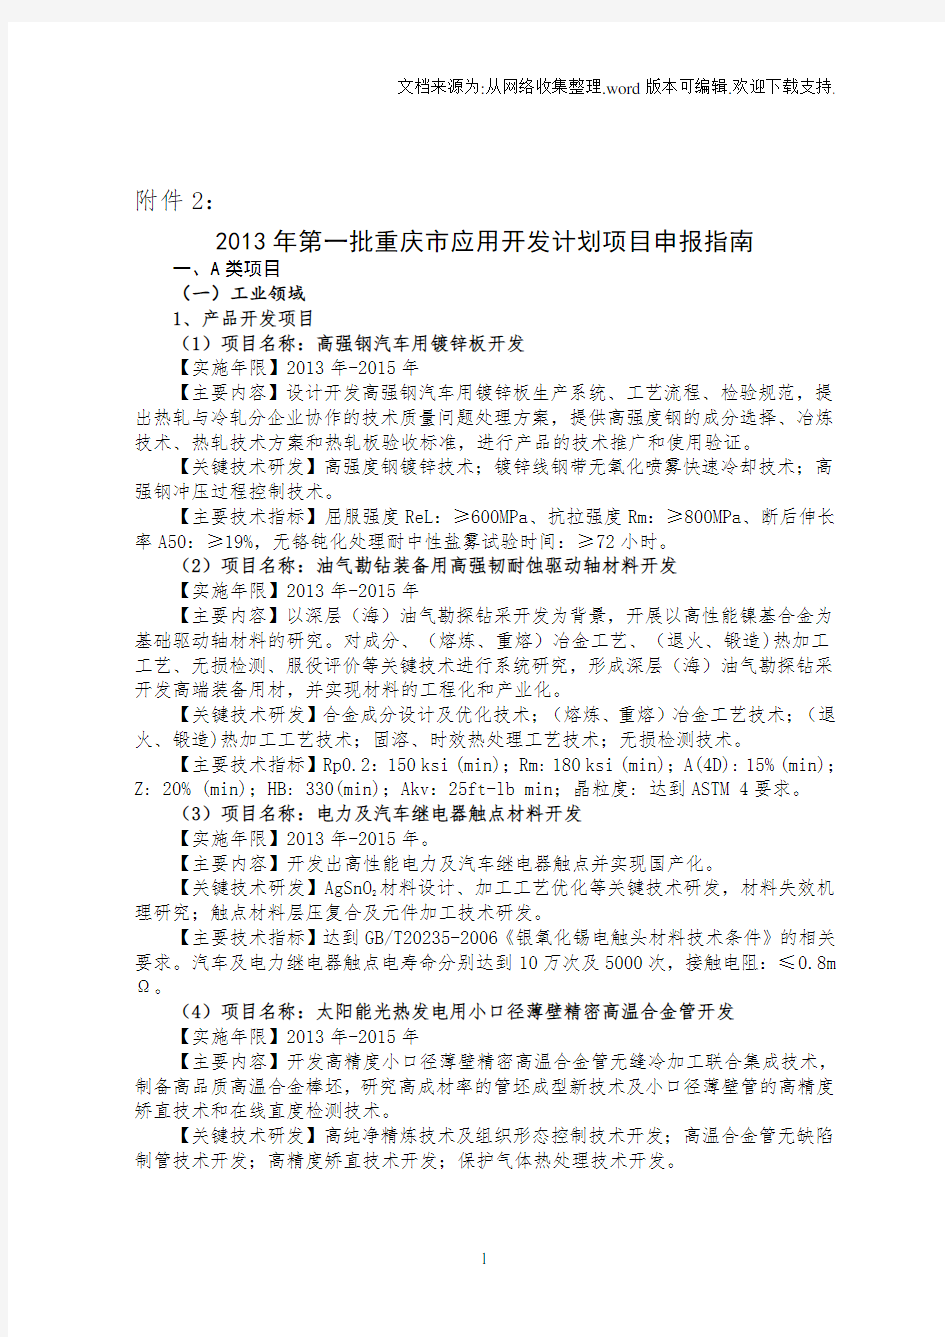 2020年重庆市应用开发计划项目申报指南.doc-重庆市科学技术委员会